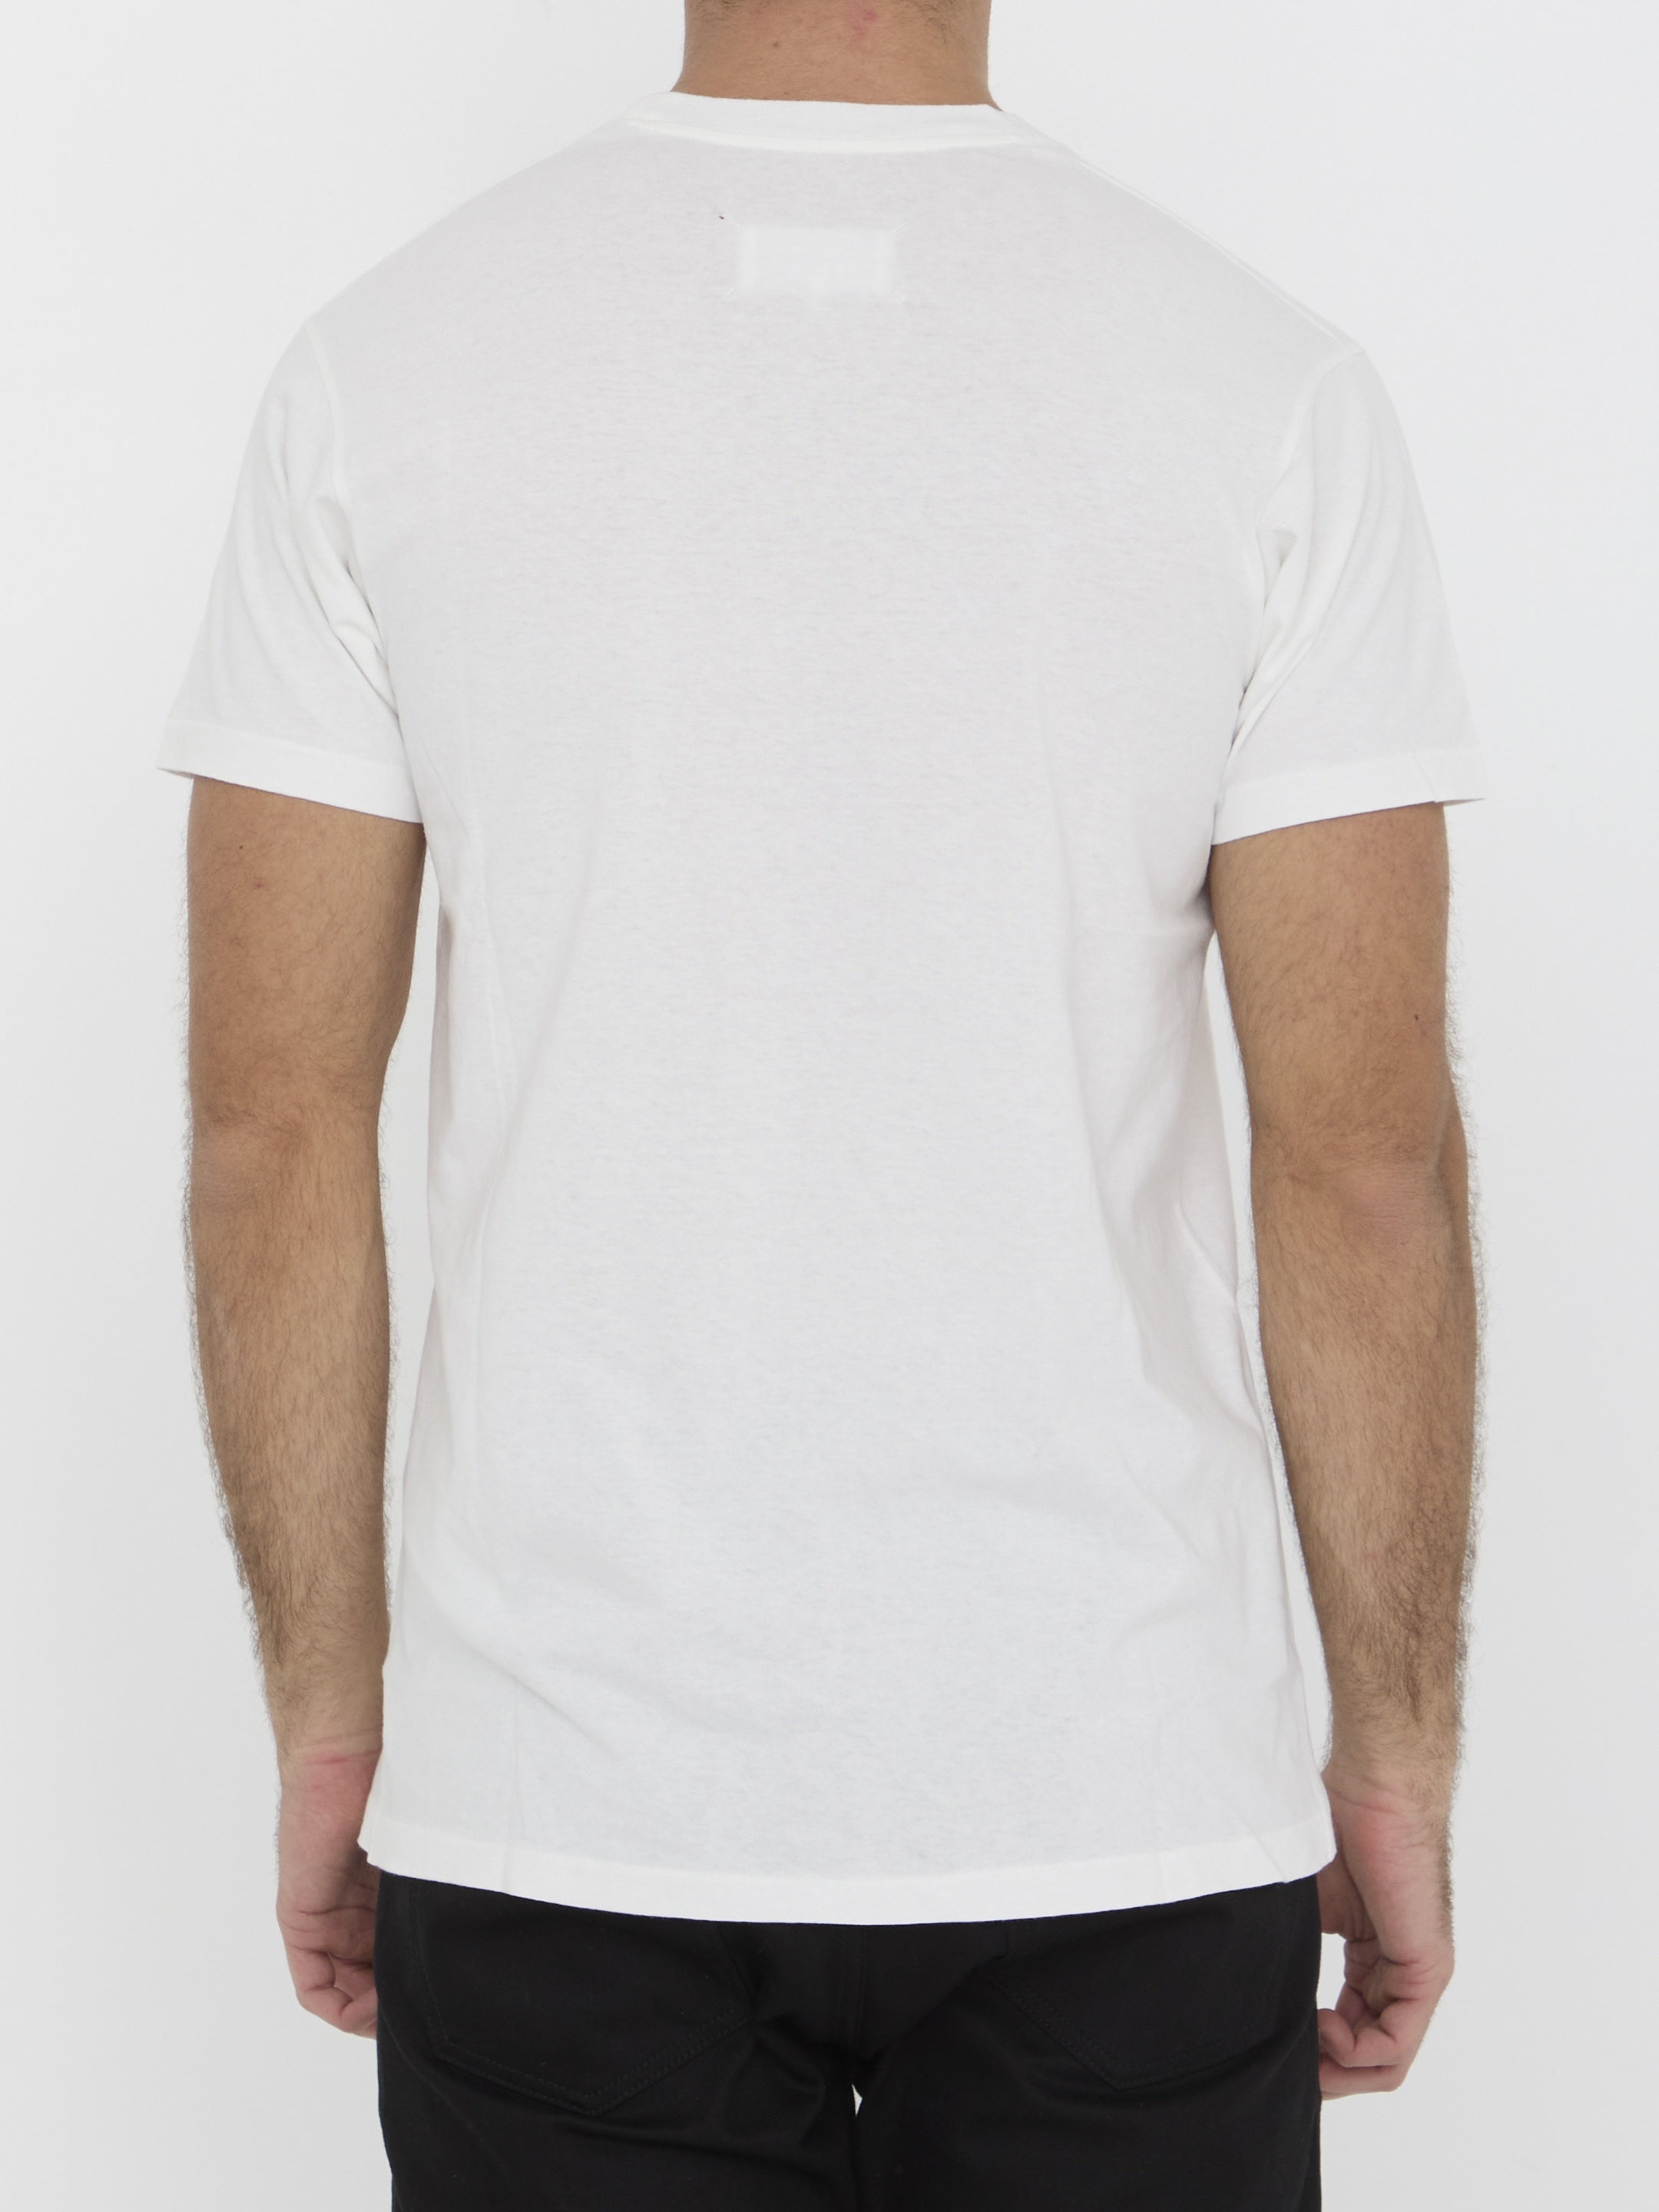 MAISON-MARGIELA-OUTLET-SALE-Reverse-logo-t-shirt-Shirts-ARCHIVE-COLLECTION-4.jpg